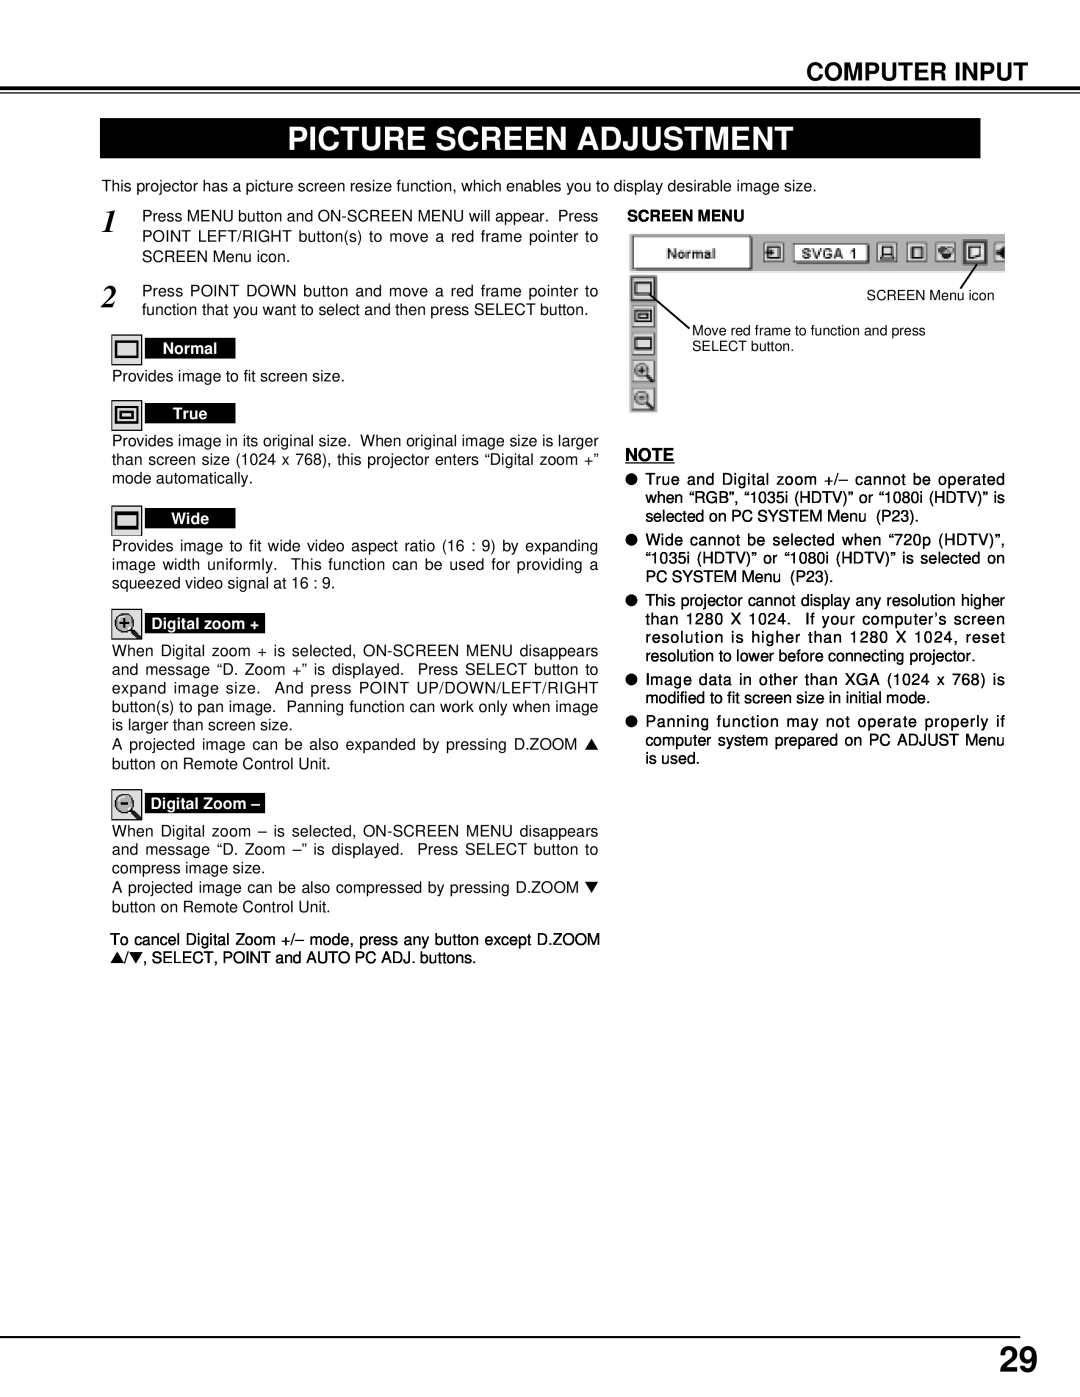 BOXLIGHT MP-42T manual Picture Screen Adjustment, Computer Input, Screen Menu 